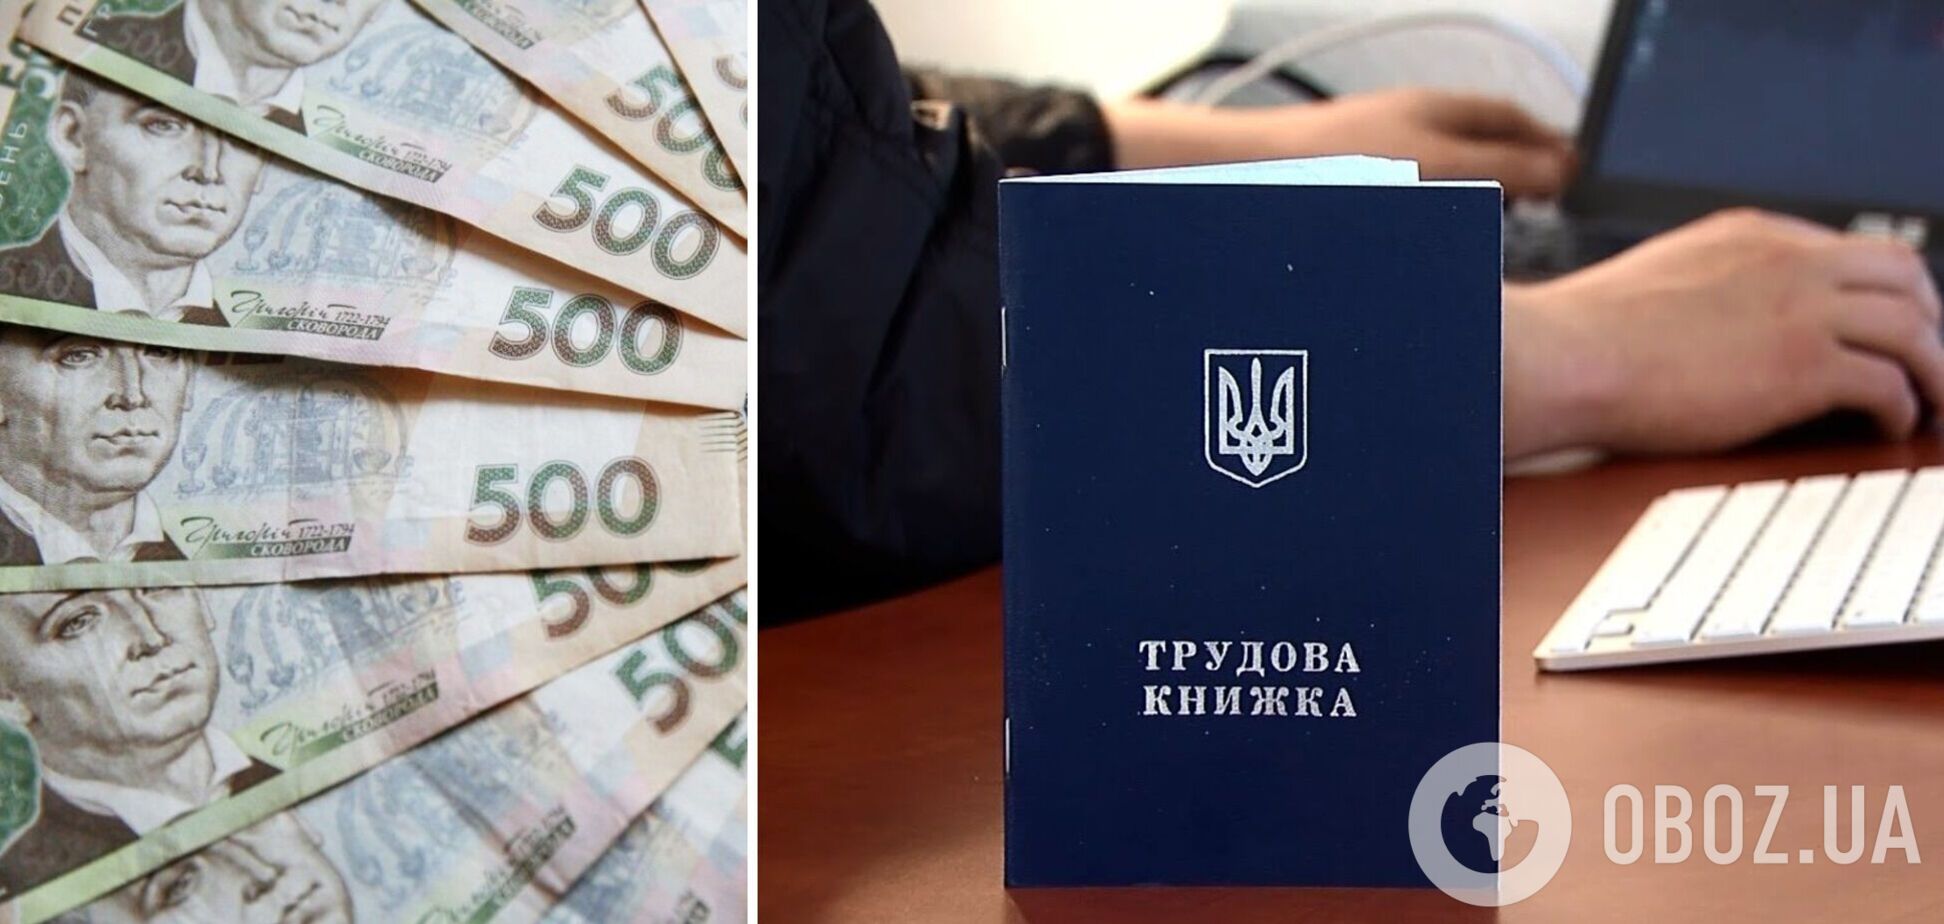 Работодателям в Украине будут возвращать часть расходов на зарплаты или ЕСВ